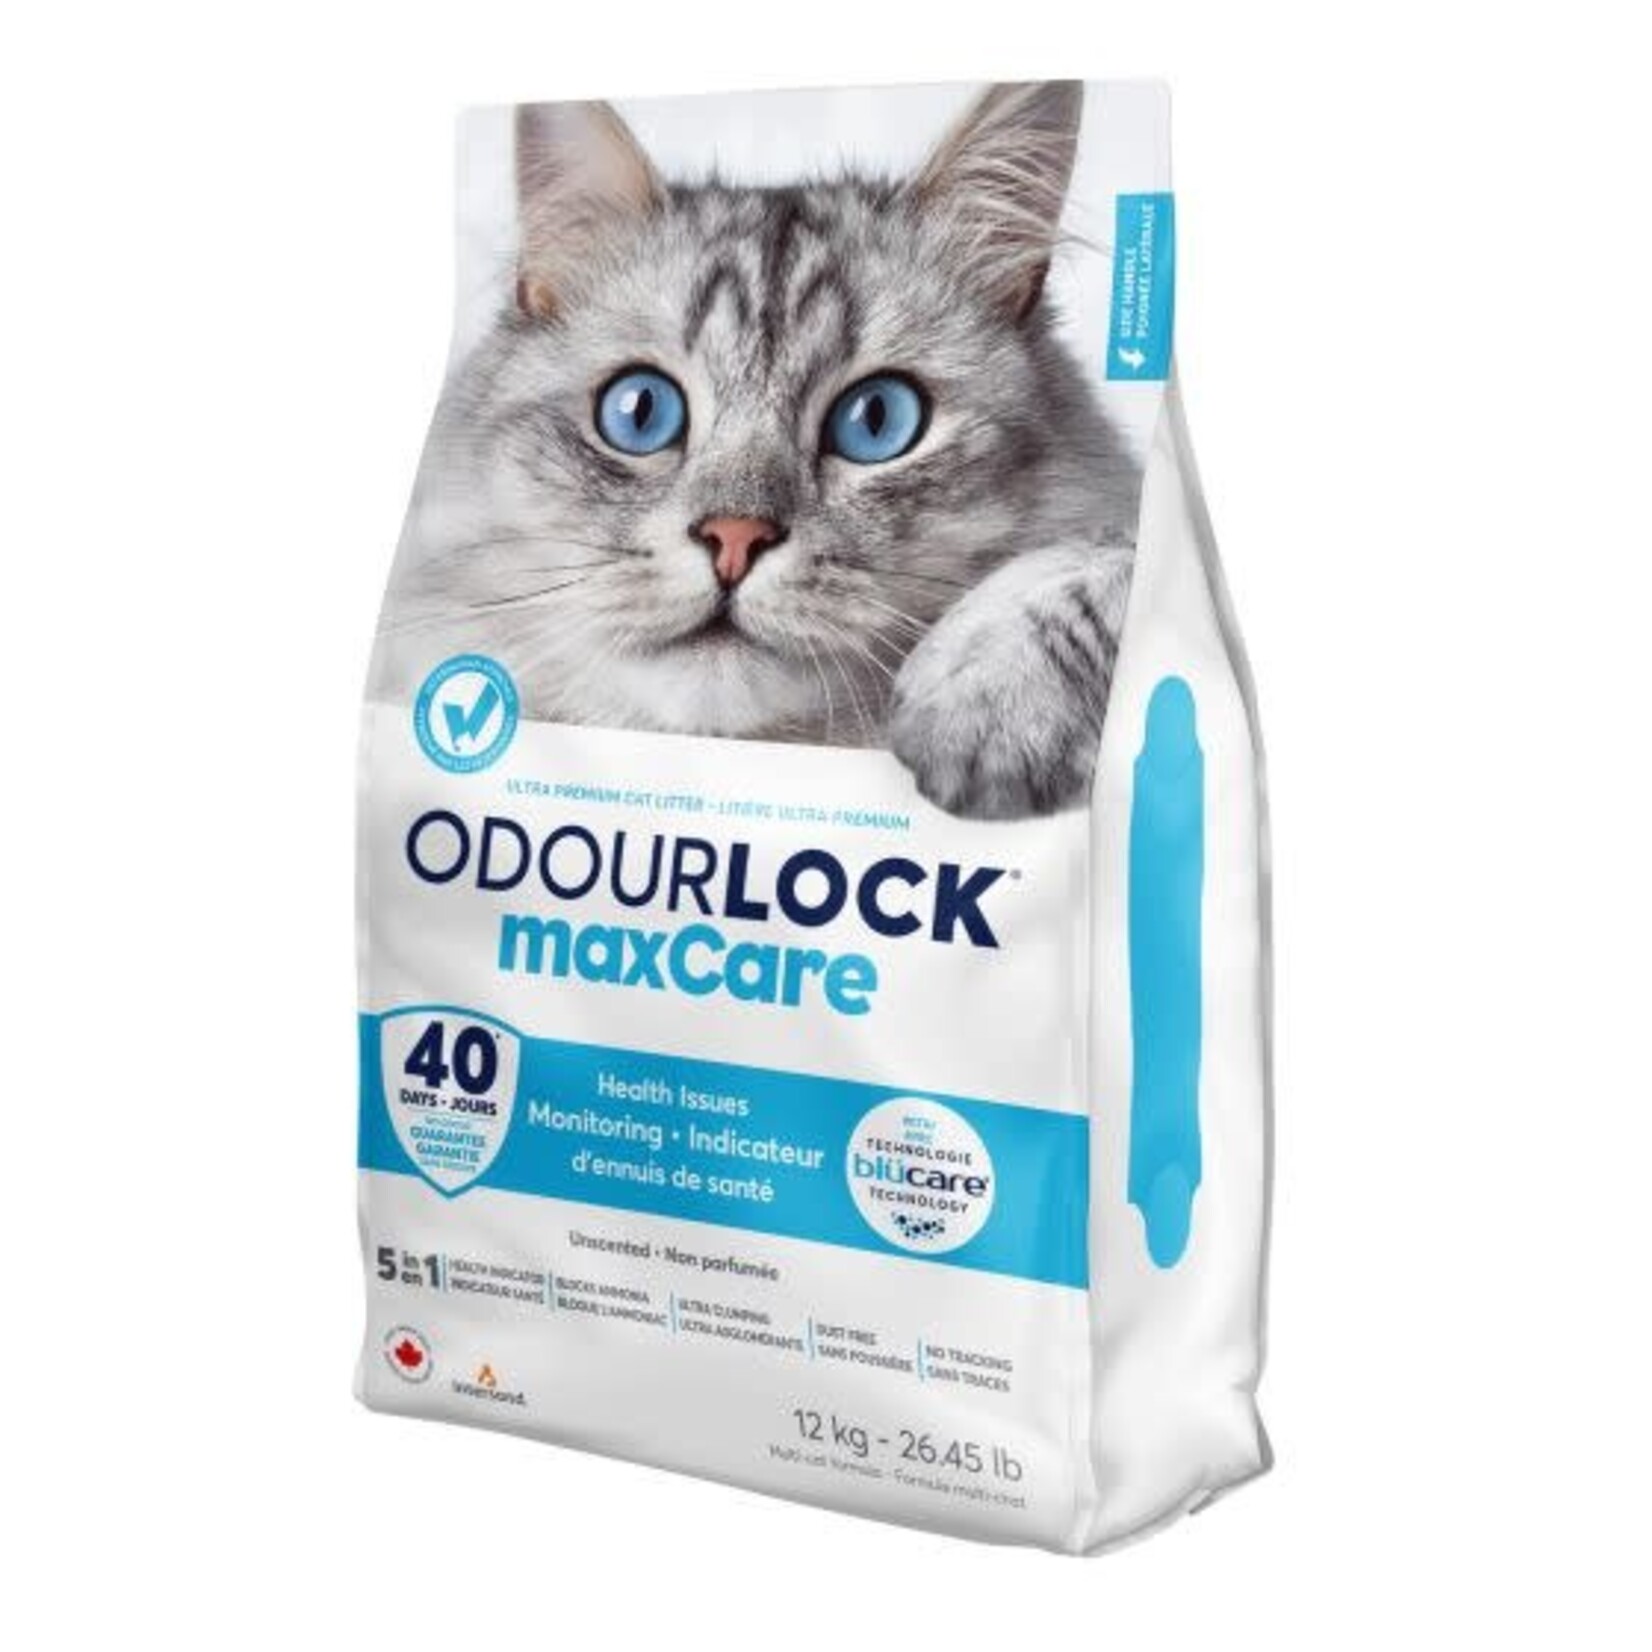 Odourlock Ultra Premium Clumping Cat Litter maxCare